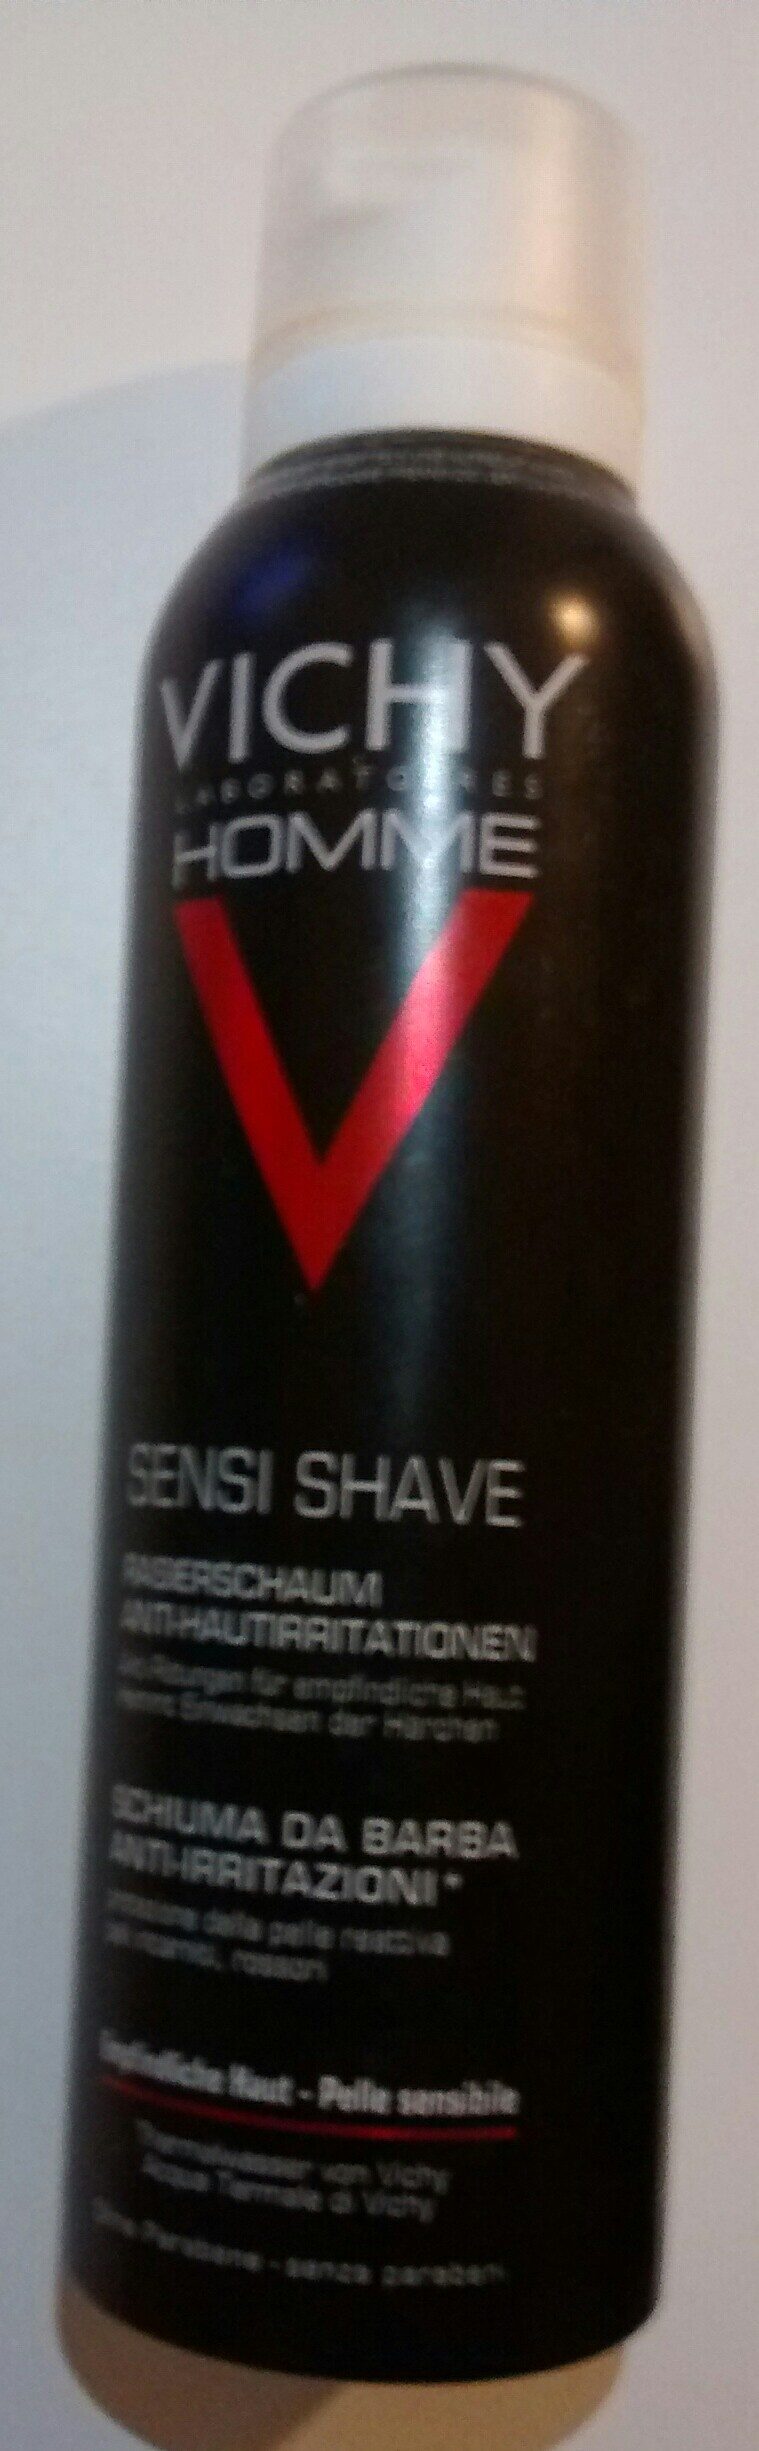 Sensi Shave Rasierschaum - Product - de